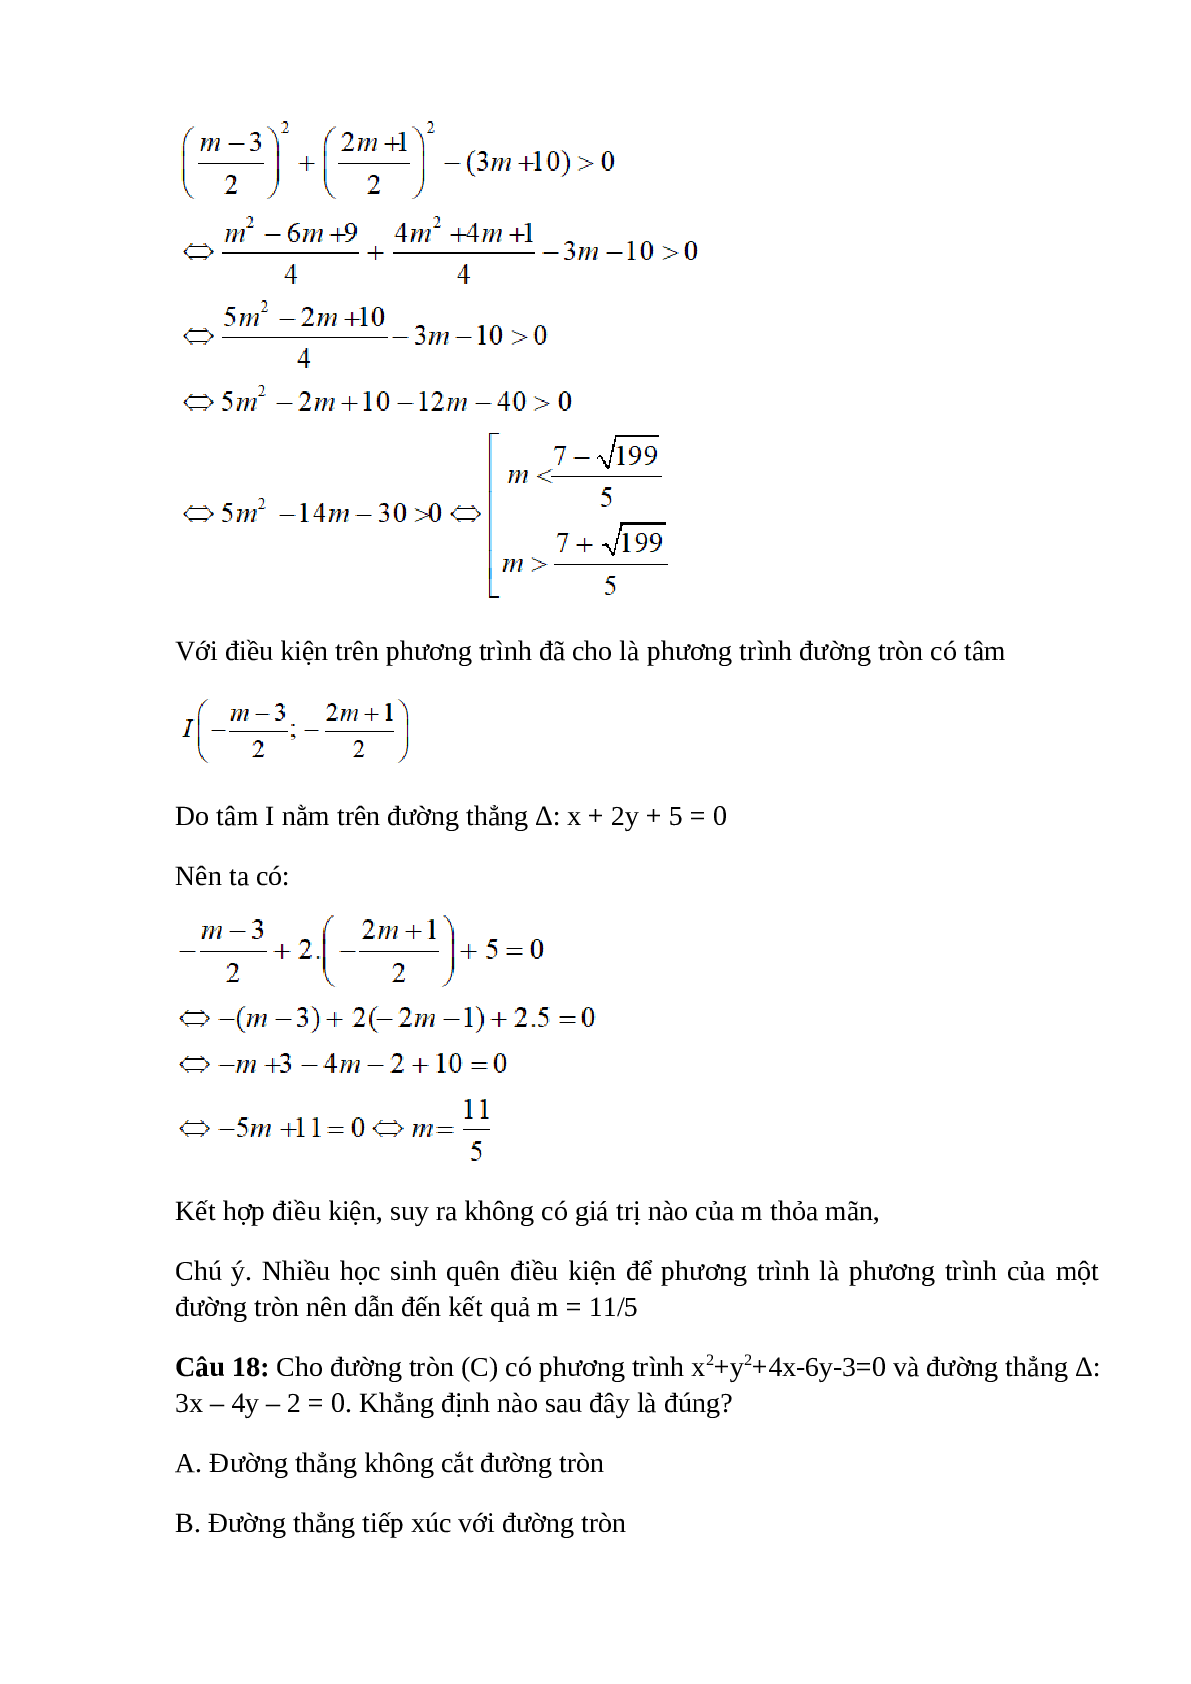 Trắc nghiệm Phương trình đường tròn (phần 2) có đáp án – Toán lớp 10 (trang 2)